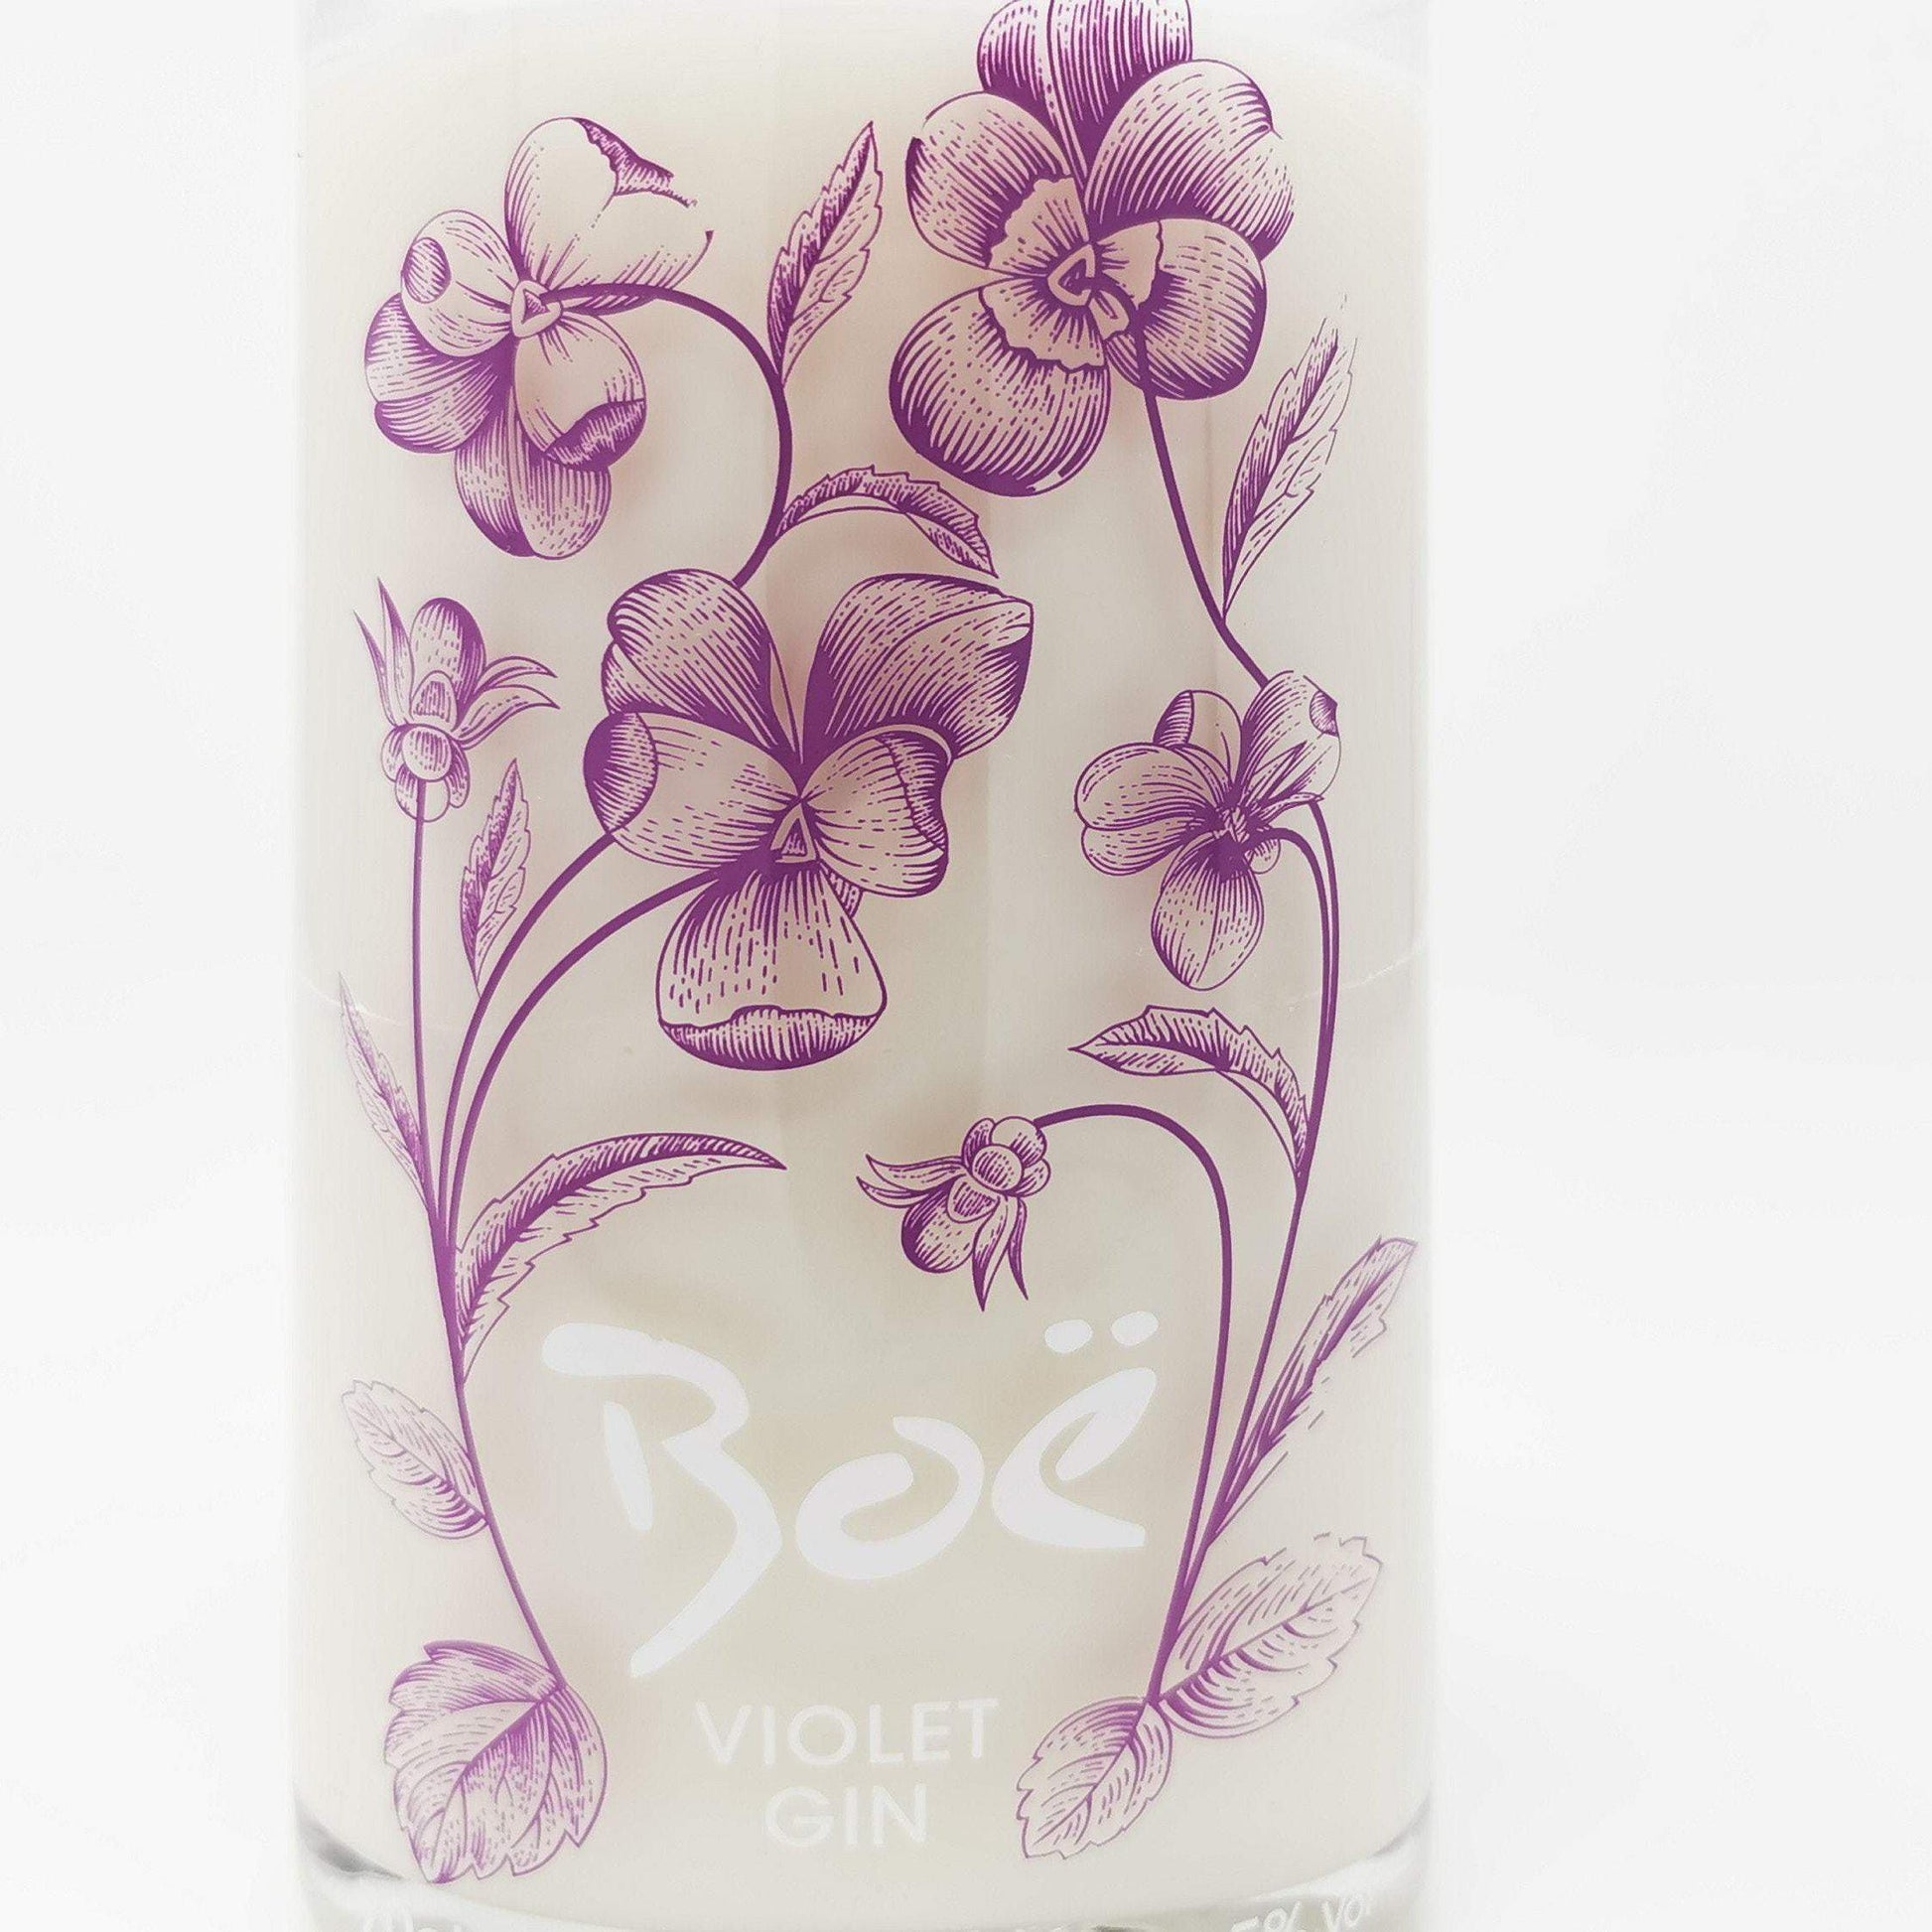 Boe Violet Gin Bottle Candle Gin Bottle Candles Adhock Homeware